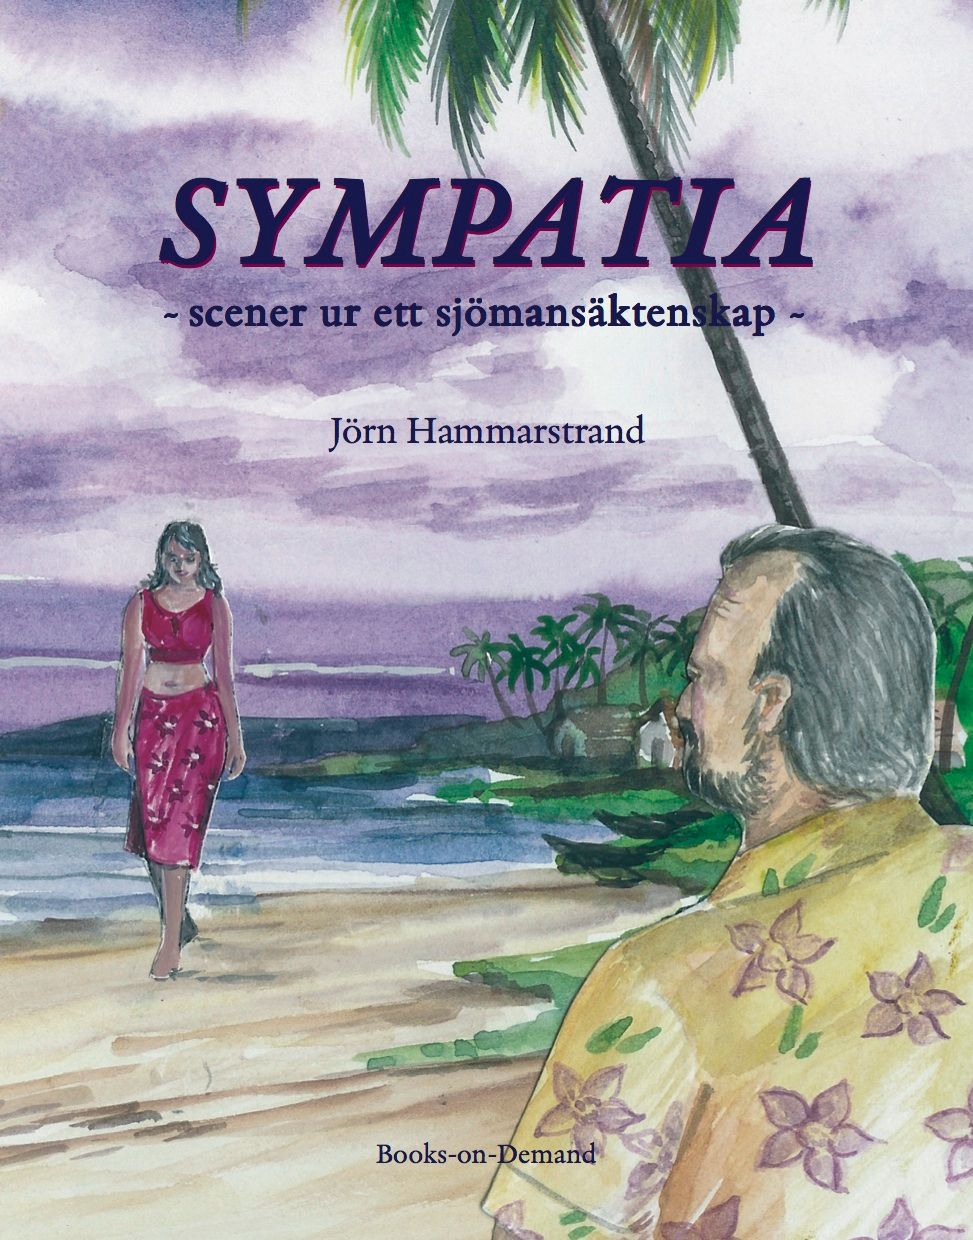 Sympatia- scener ur ett sjömansäktenskap, e-bog af Jörn Hammarstrand